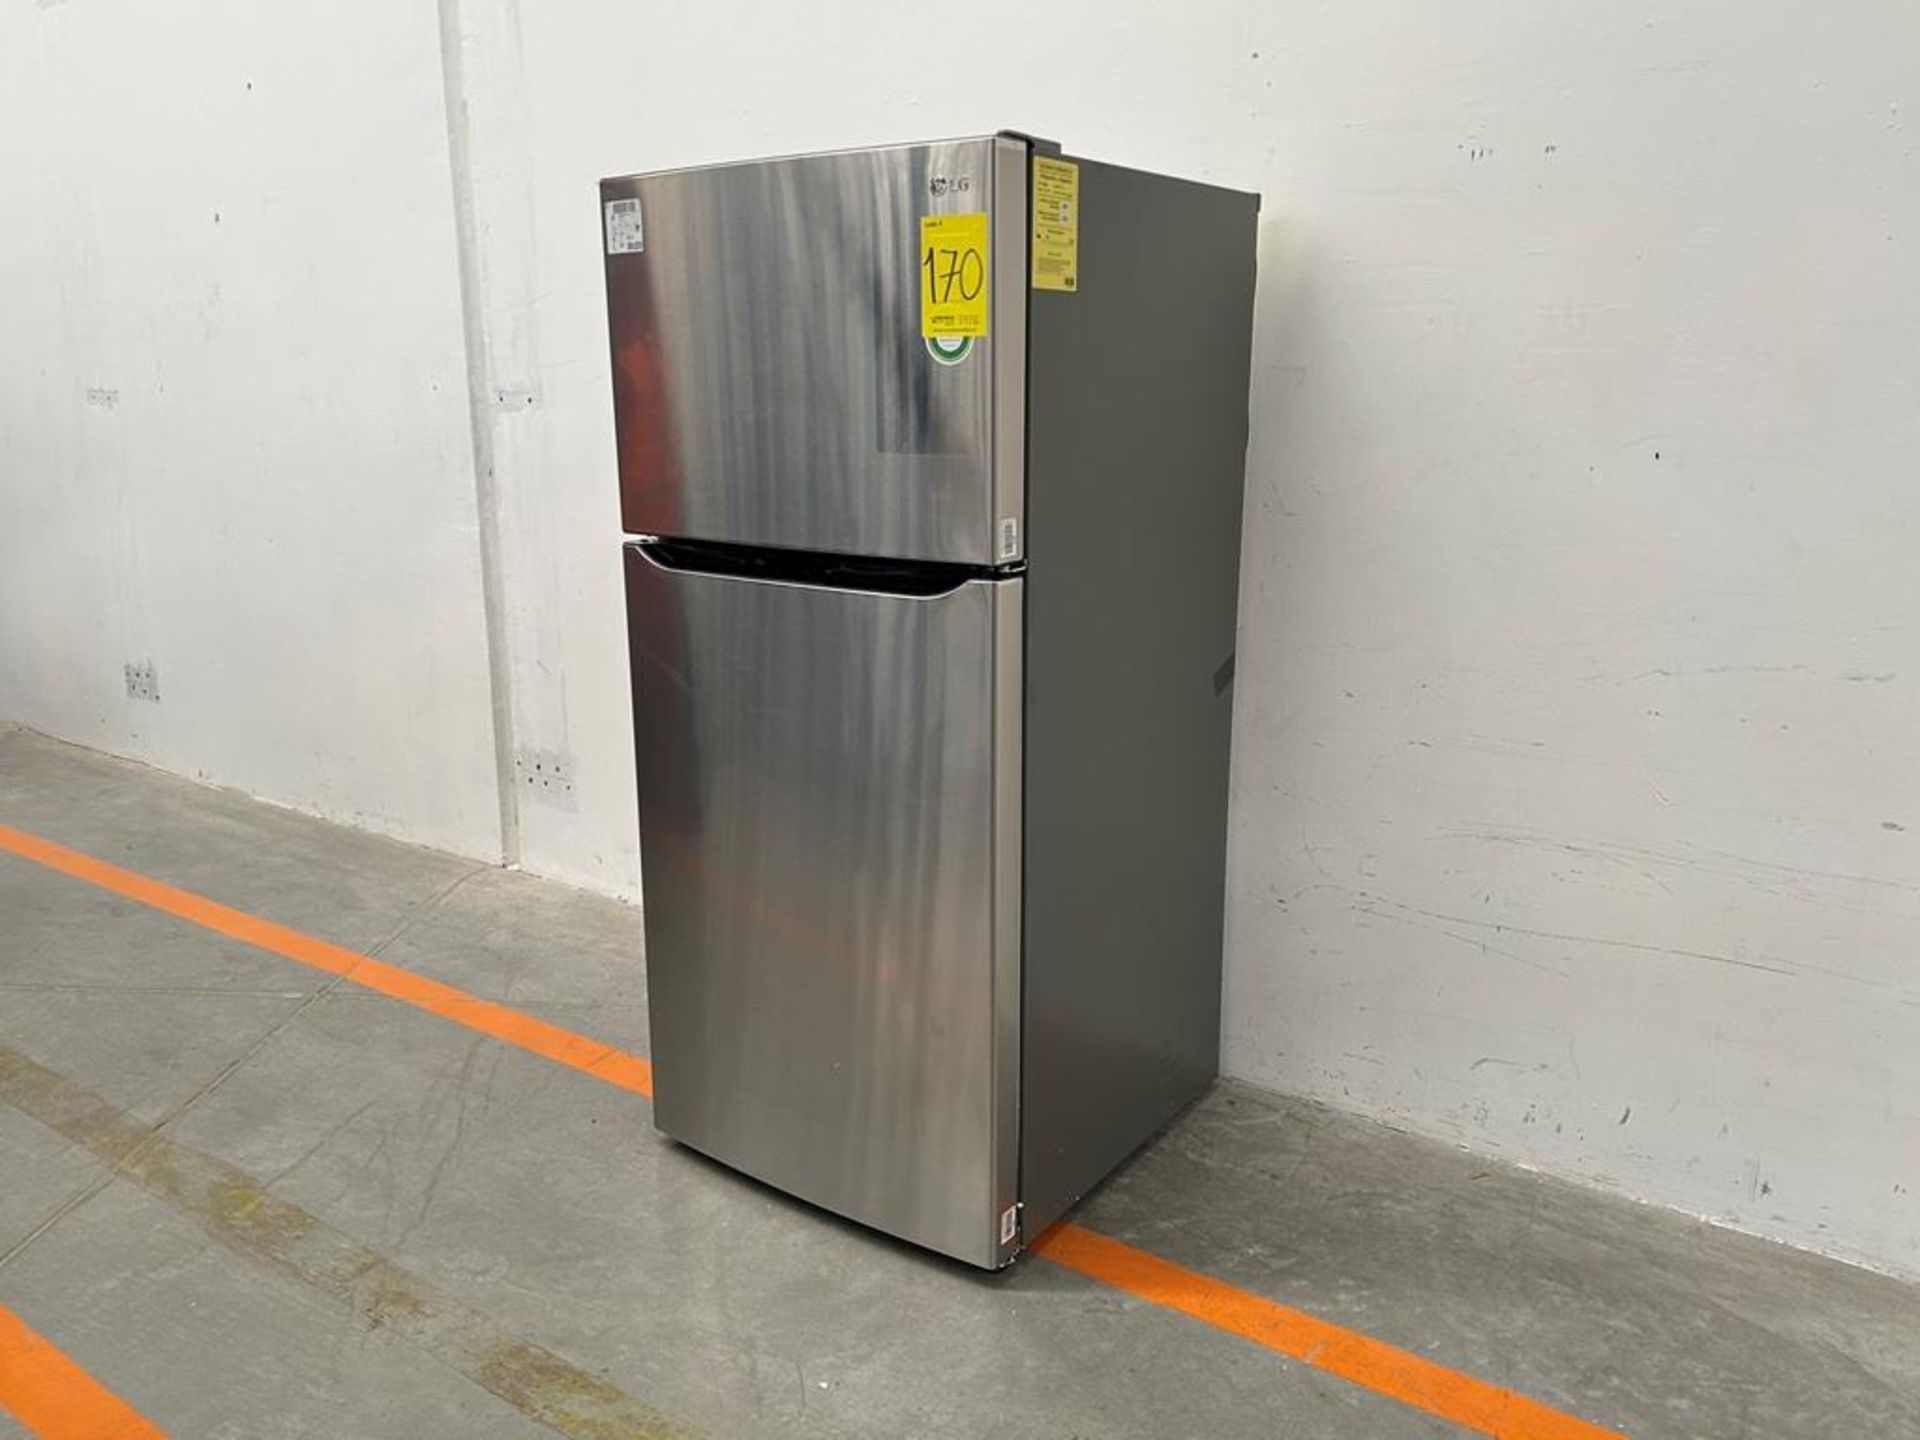 (NUEVO) Refrigerador Marca LG, Modelo LT57BPSX, Serie D1X339, Color GRIS - Image 2 of 11